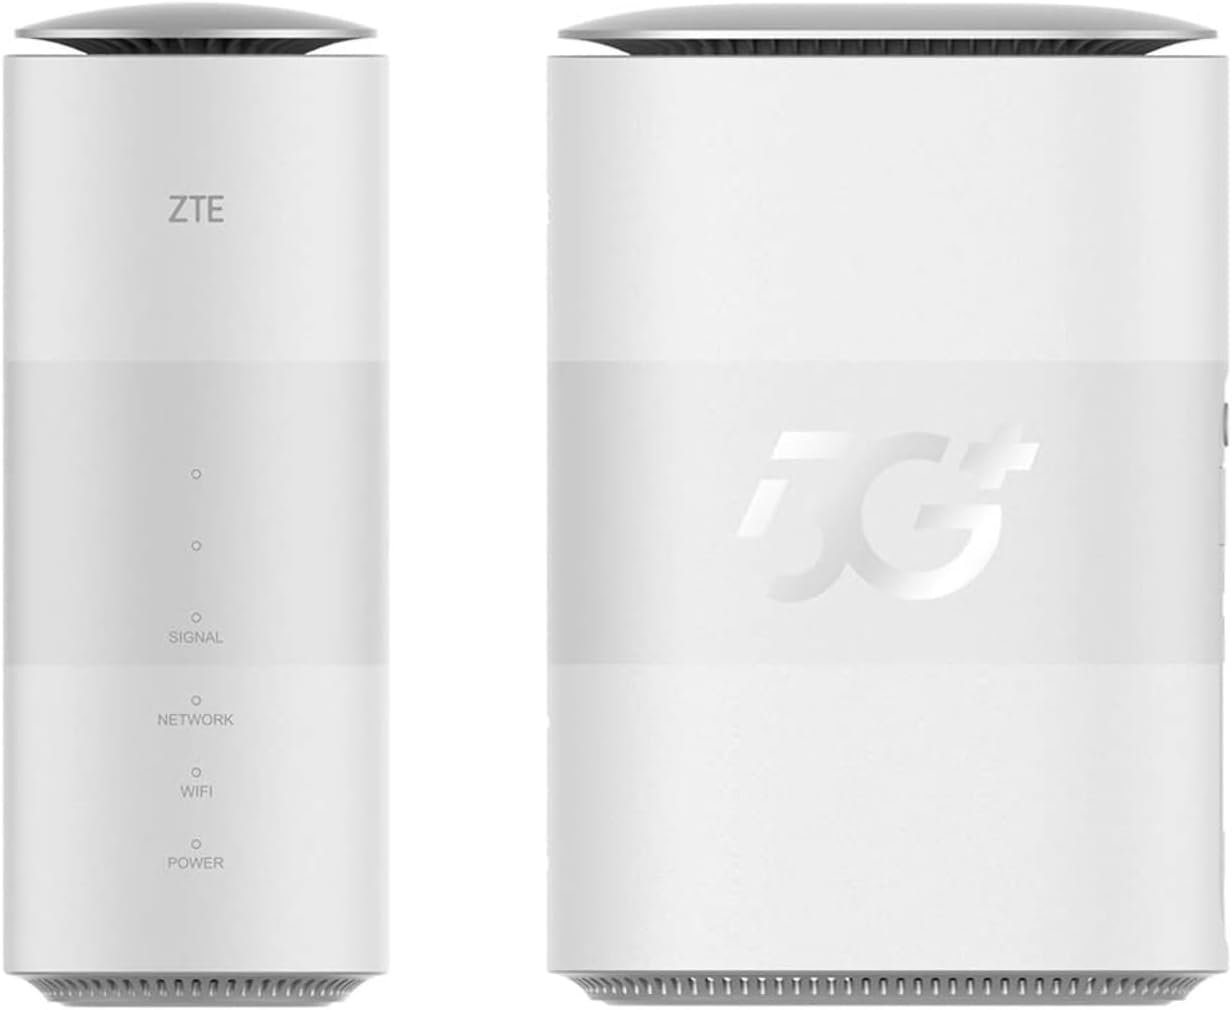 ZTE MC888 HyperBox » 5G » LTE » WiFi 6 » Nano Sim Karte WLAN-Router von ZTE